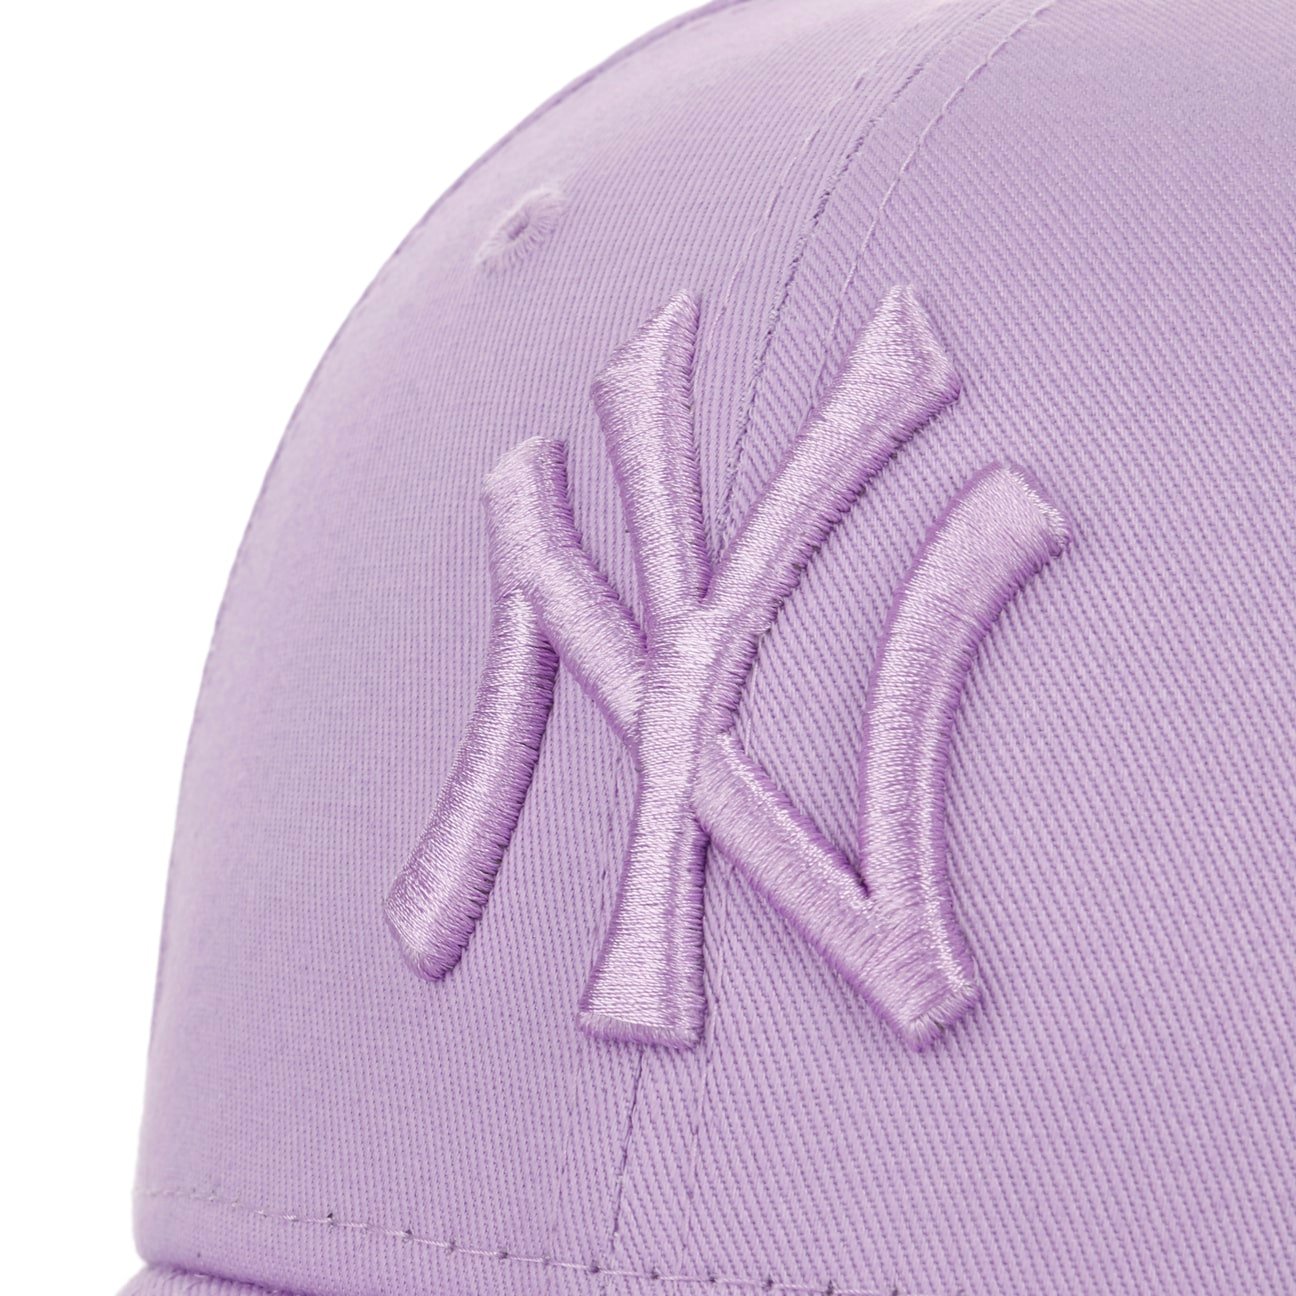 Womens New York Yankees New Era 9Forty Metallic Logo Light Purple